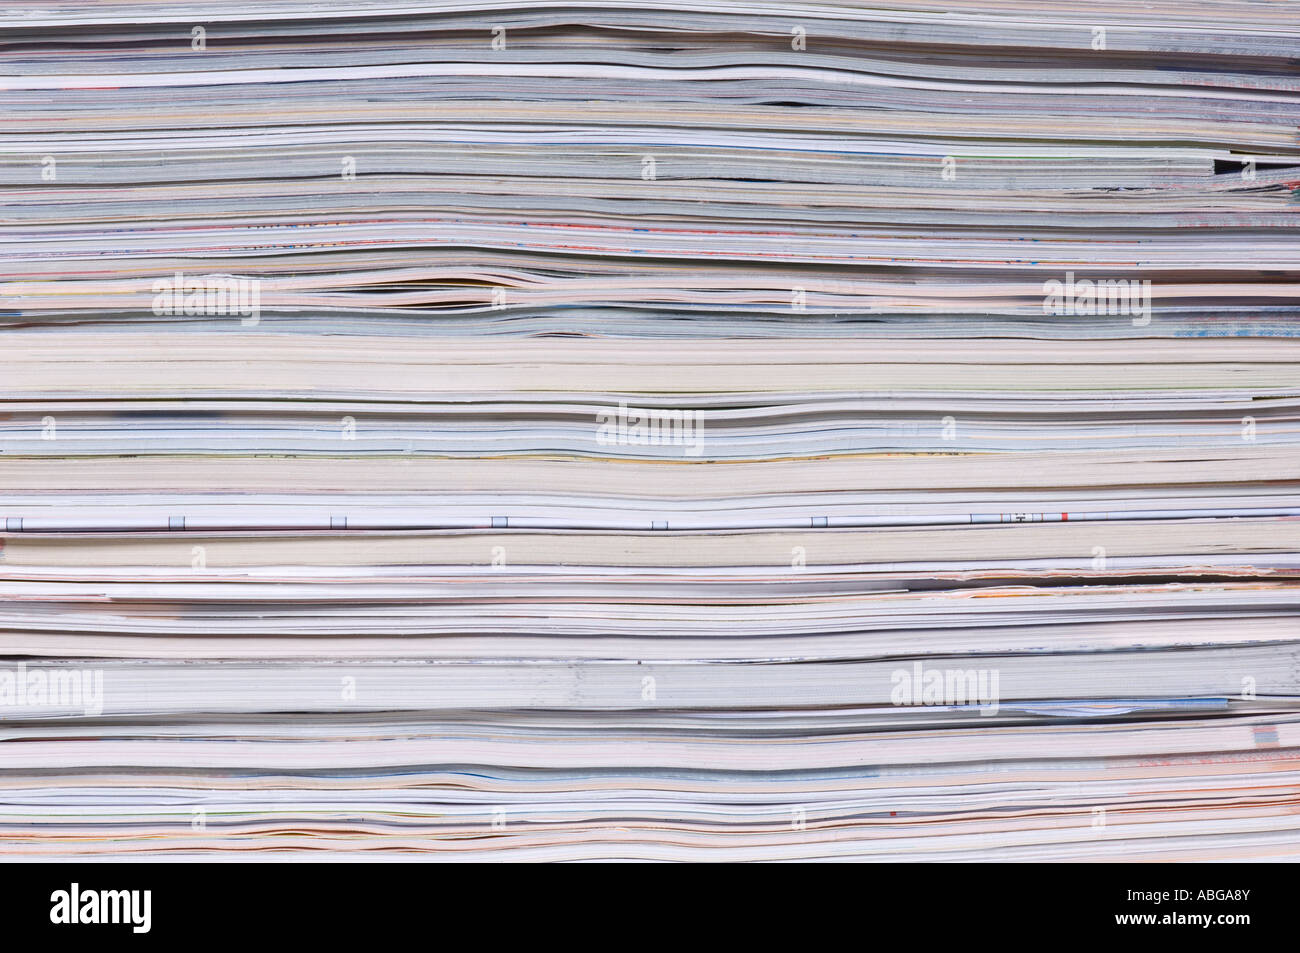 Magazines, paper Stock Photo